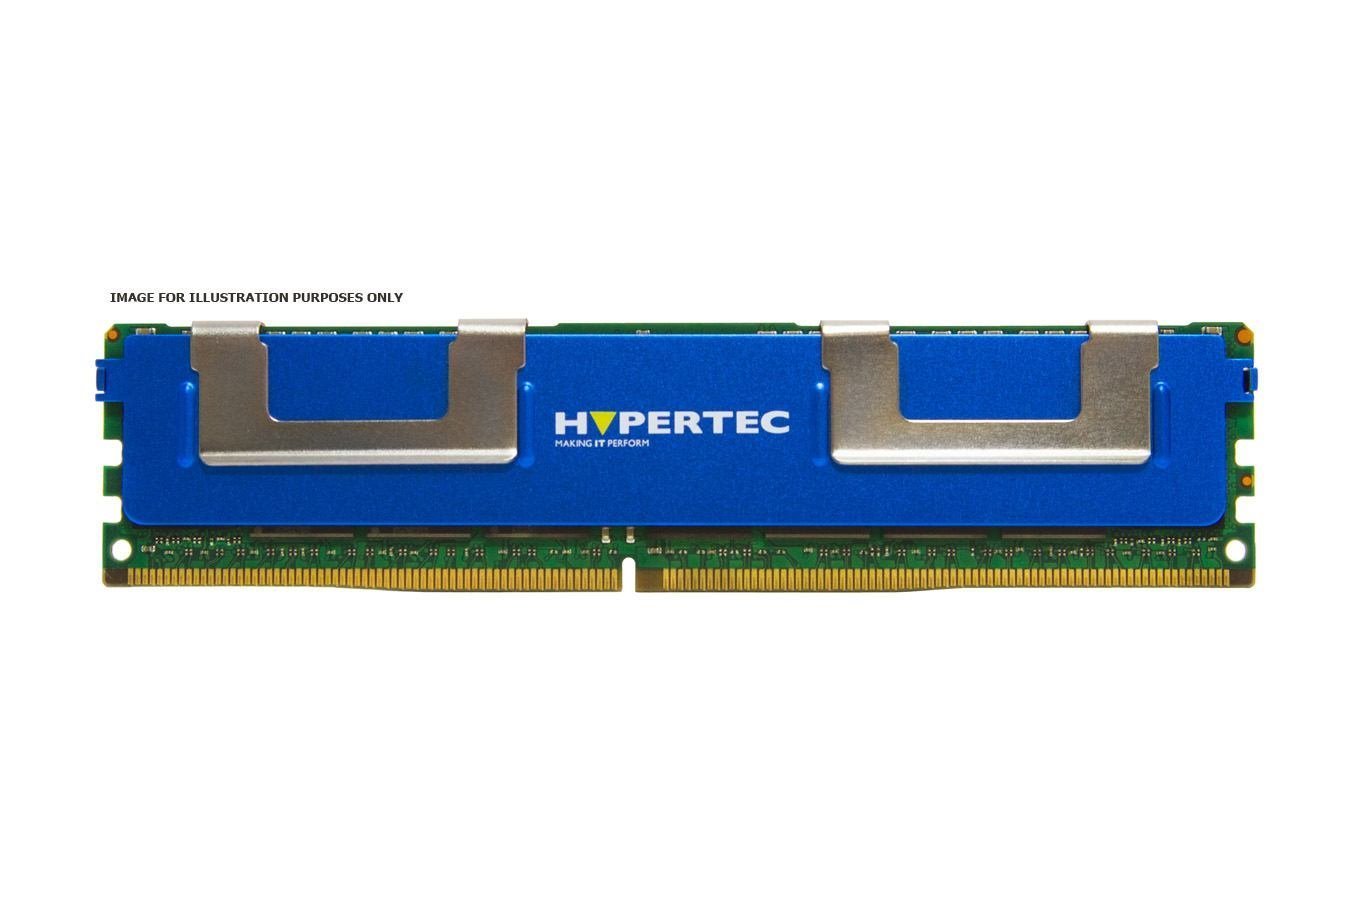 Hypertec 49Y1397-HY Memory Module 8 GB 1 X 8 GB DDR3L 1333 MHz Ecc (An IBM/Lenovo Equivalent 8GB Low Power Dual Rank Registered Dimm [PC3-10600R]Legacy [1Year Warranty])